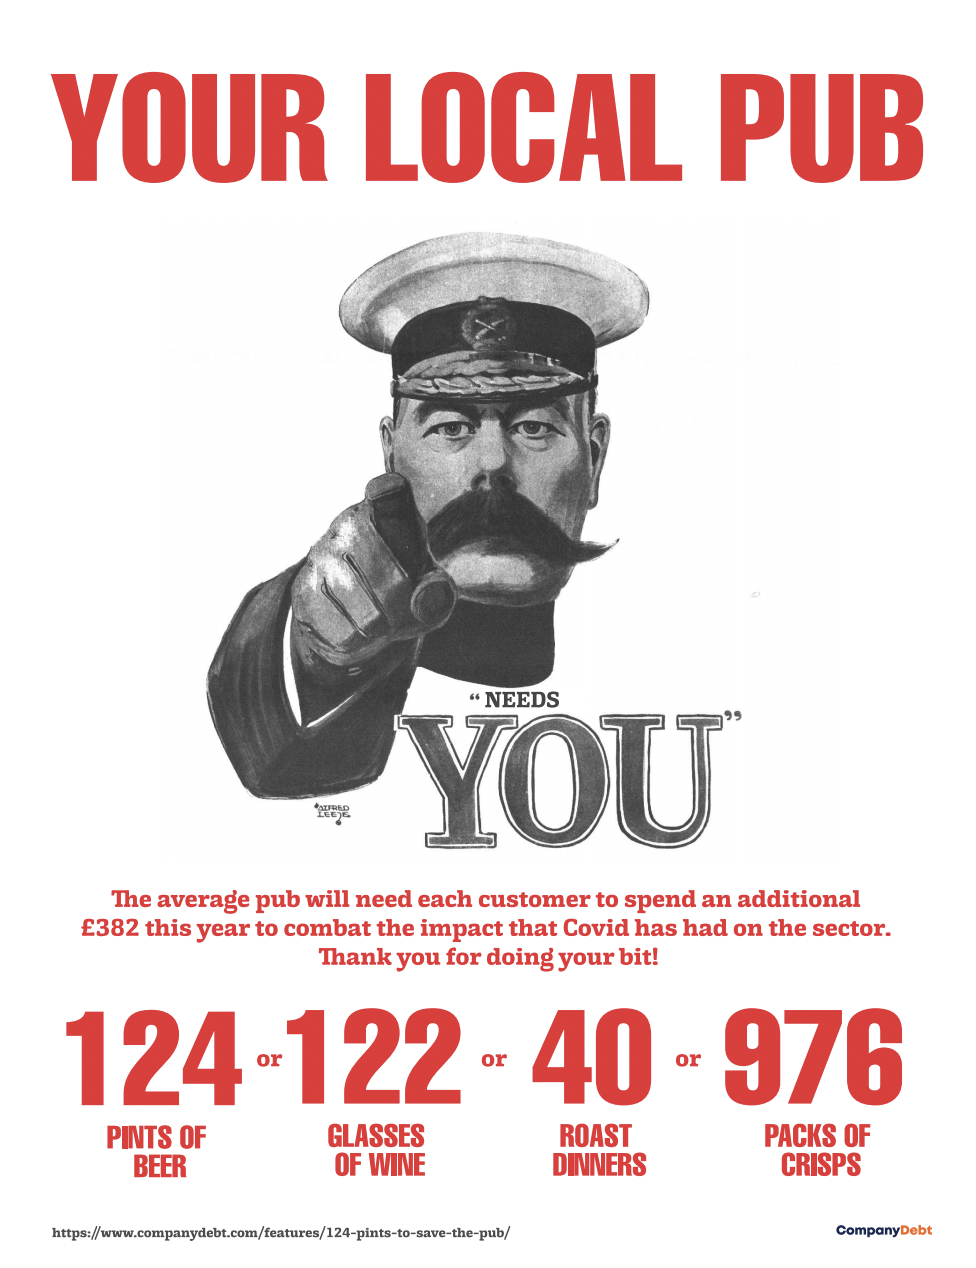 your-local-pub-needs-you-e1620989884145.